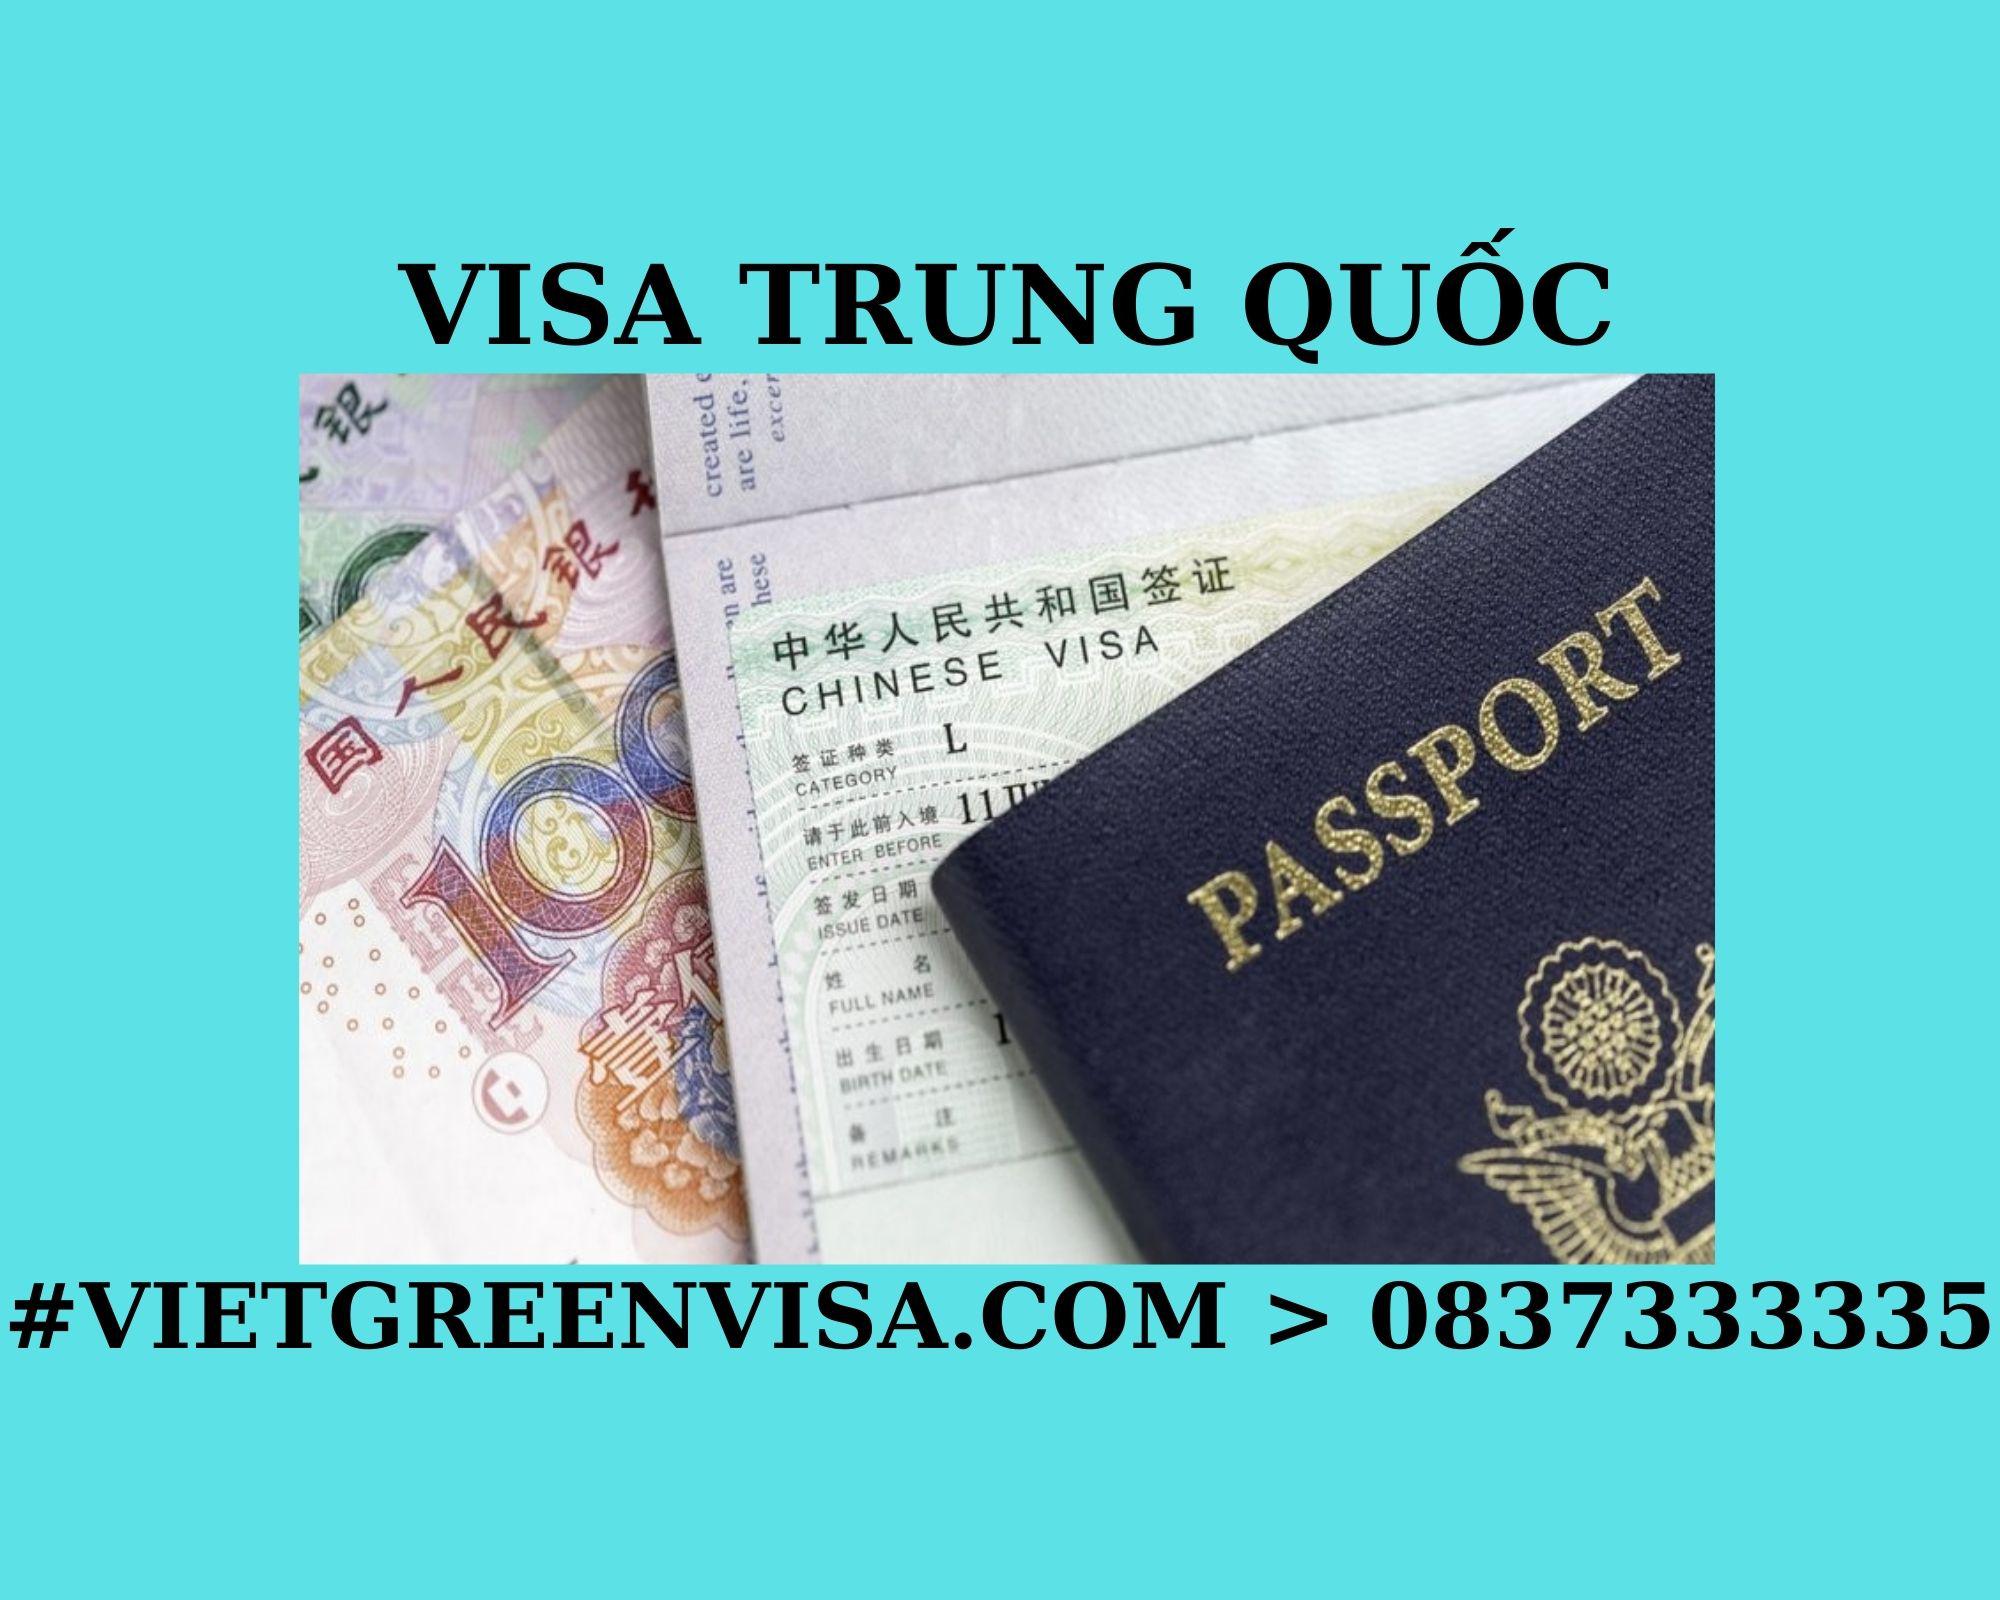 Dịch vụ xin visa Trung Quốc trọn gói. Viet Green visa